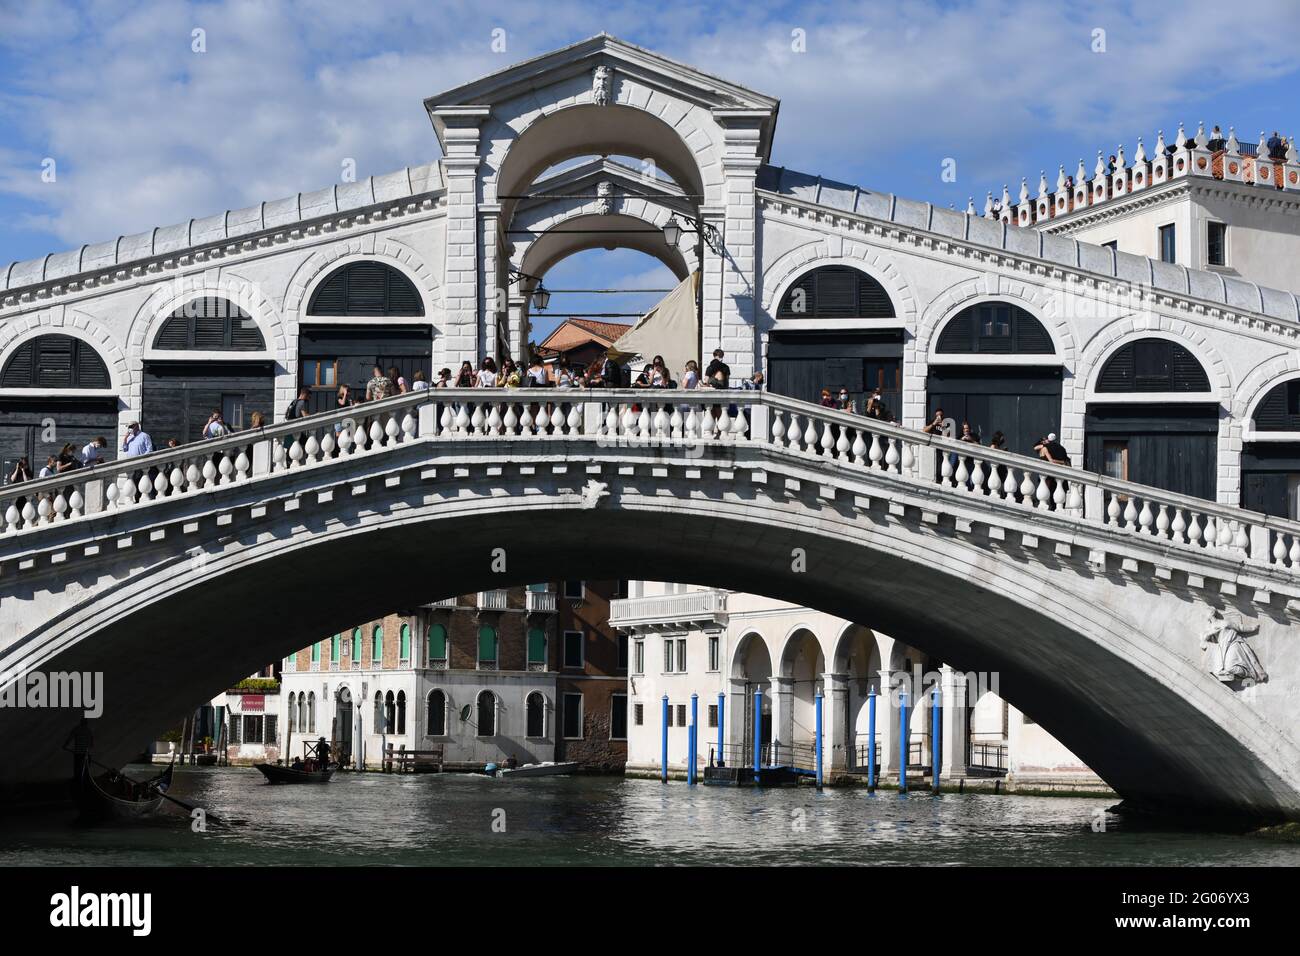 Rialtobrücke, eine der bekanntesten Sehenswürdigkeiten Venedigs, mit ersten Touristen nach Grenzöffnung zu Italien nach dem  Covid bedingten Lock down Stock Photo